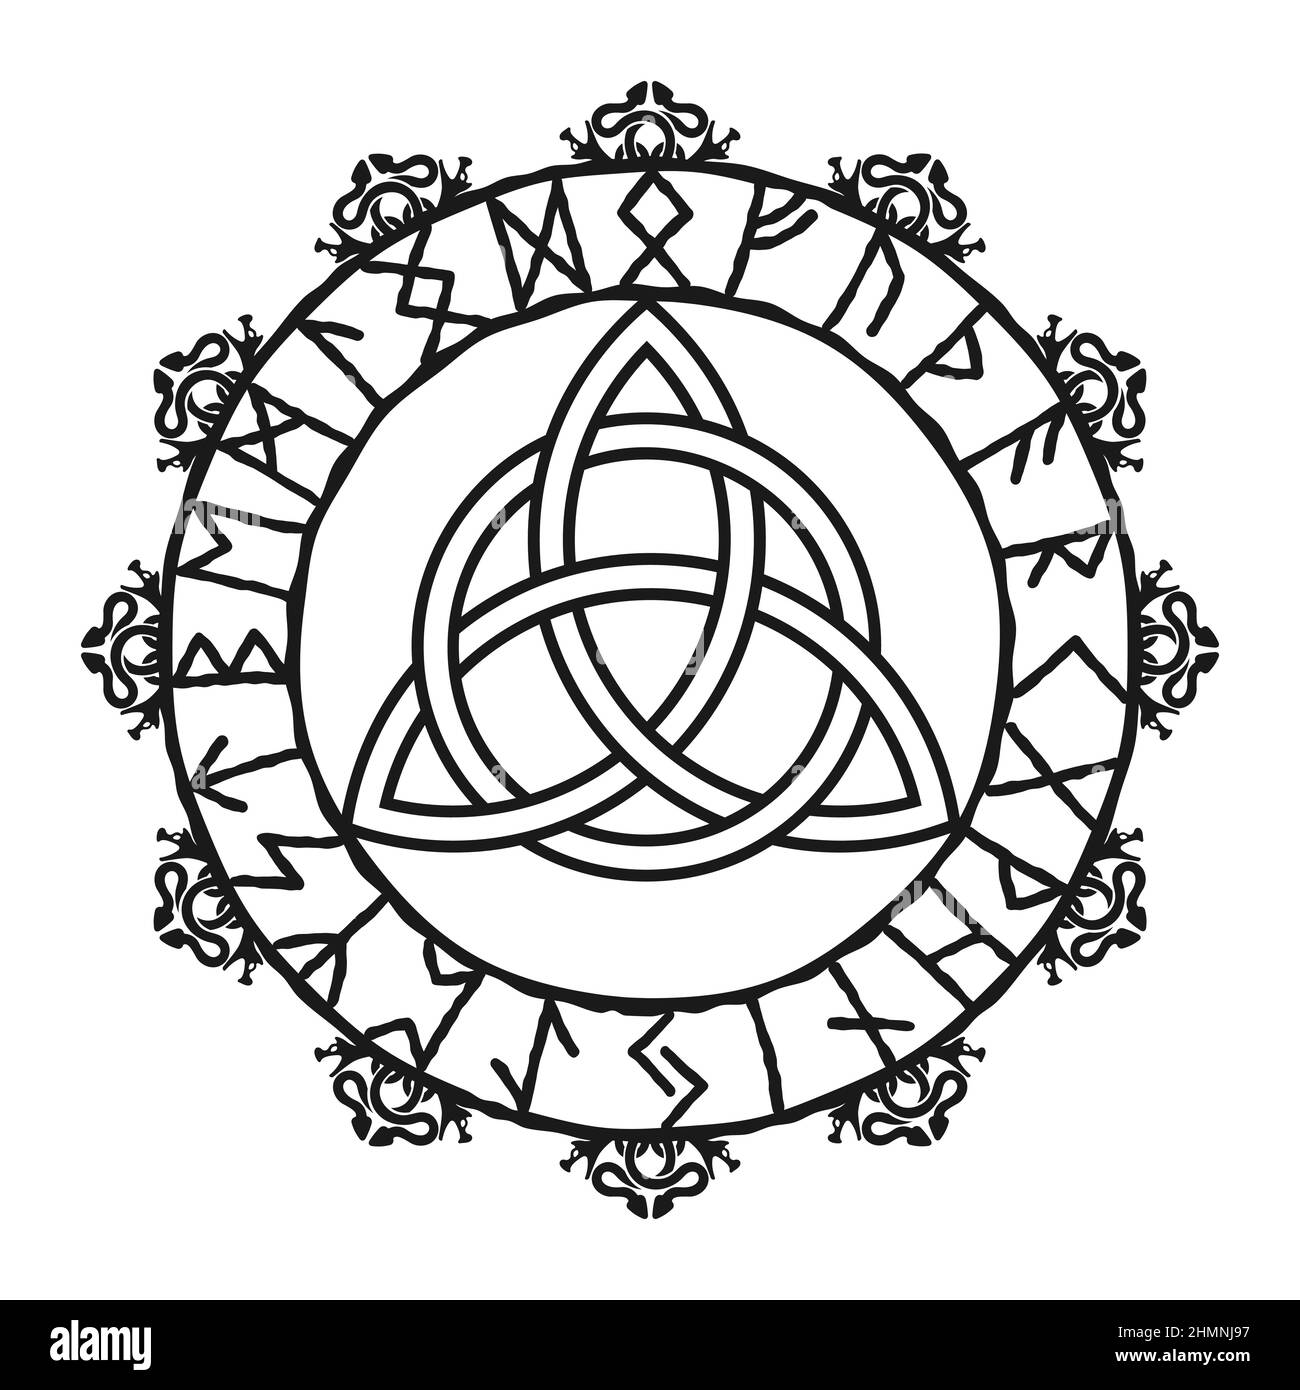 Signe Triquetra, logo celtic Knot. Amulette de protection scandinave. Symbole celtique païen de triangle, tatouages nordiques. vikings d'amulette à la scandinave Illustration de Vecteur